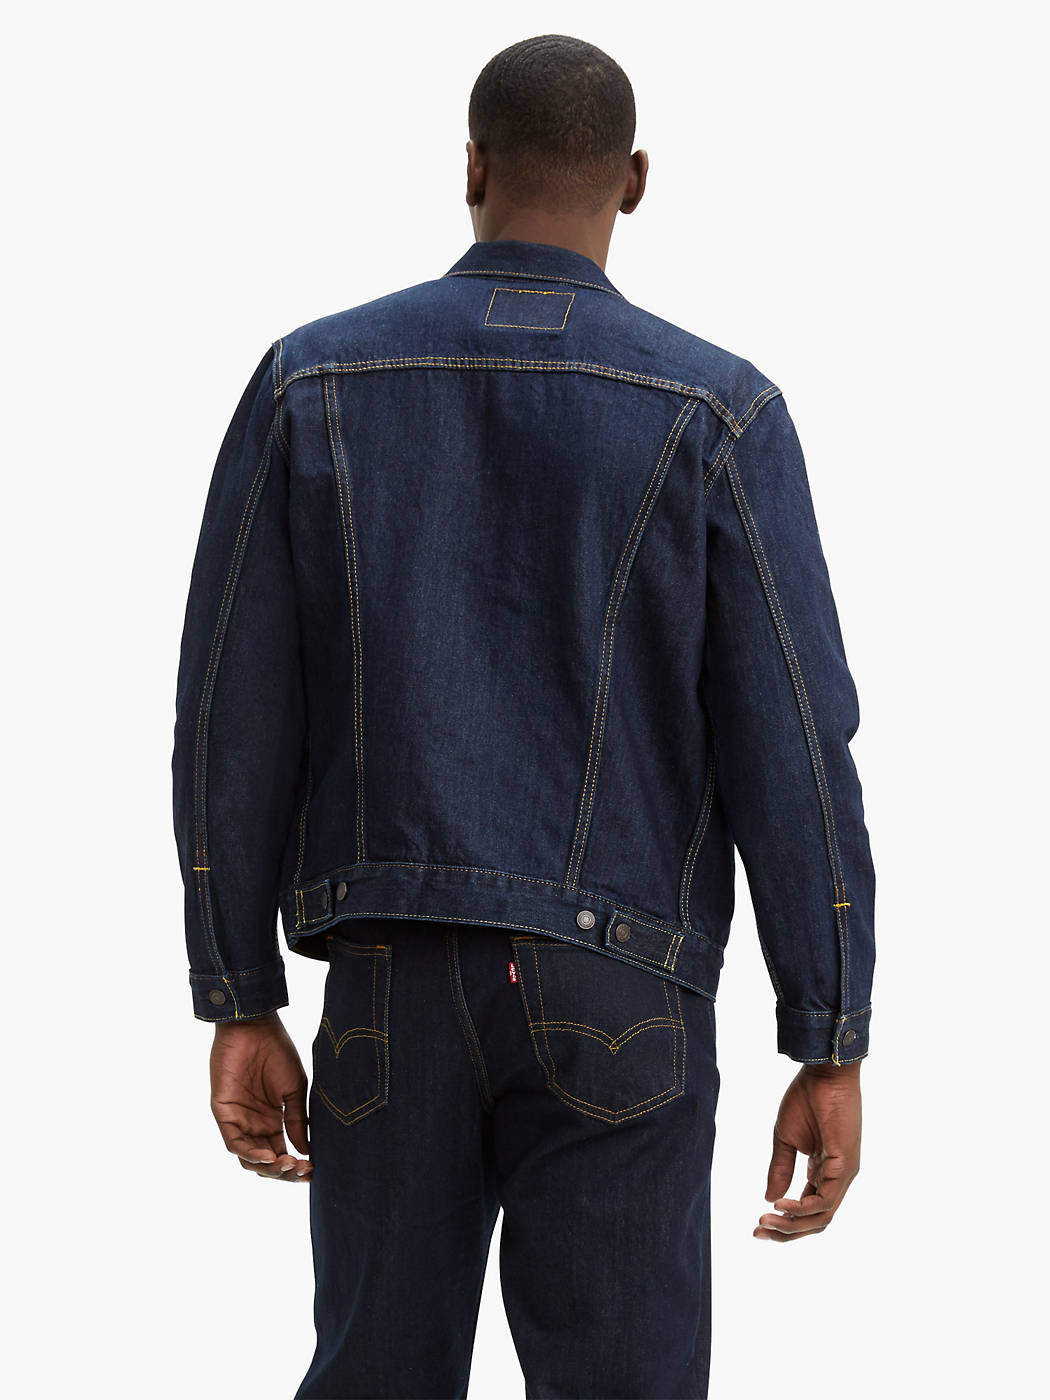 Levi's Trucker Jacket - Rinse Dark Wash – Ascent Wear